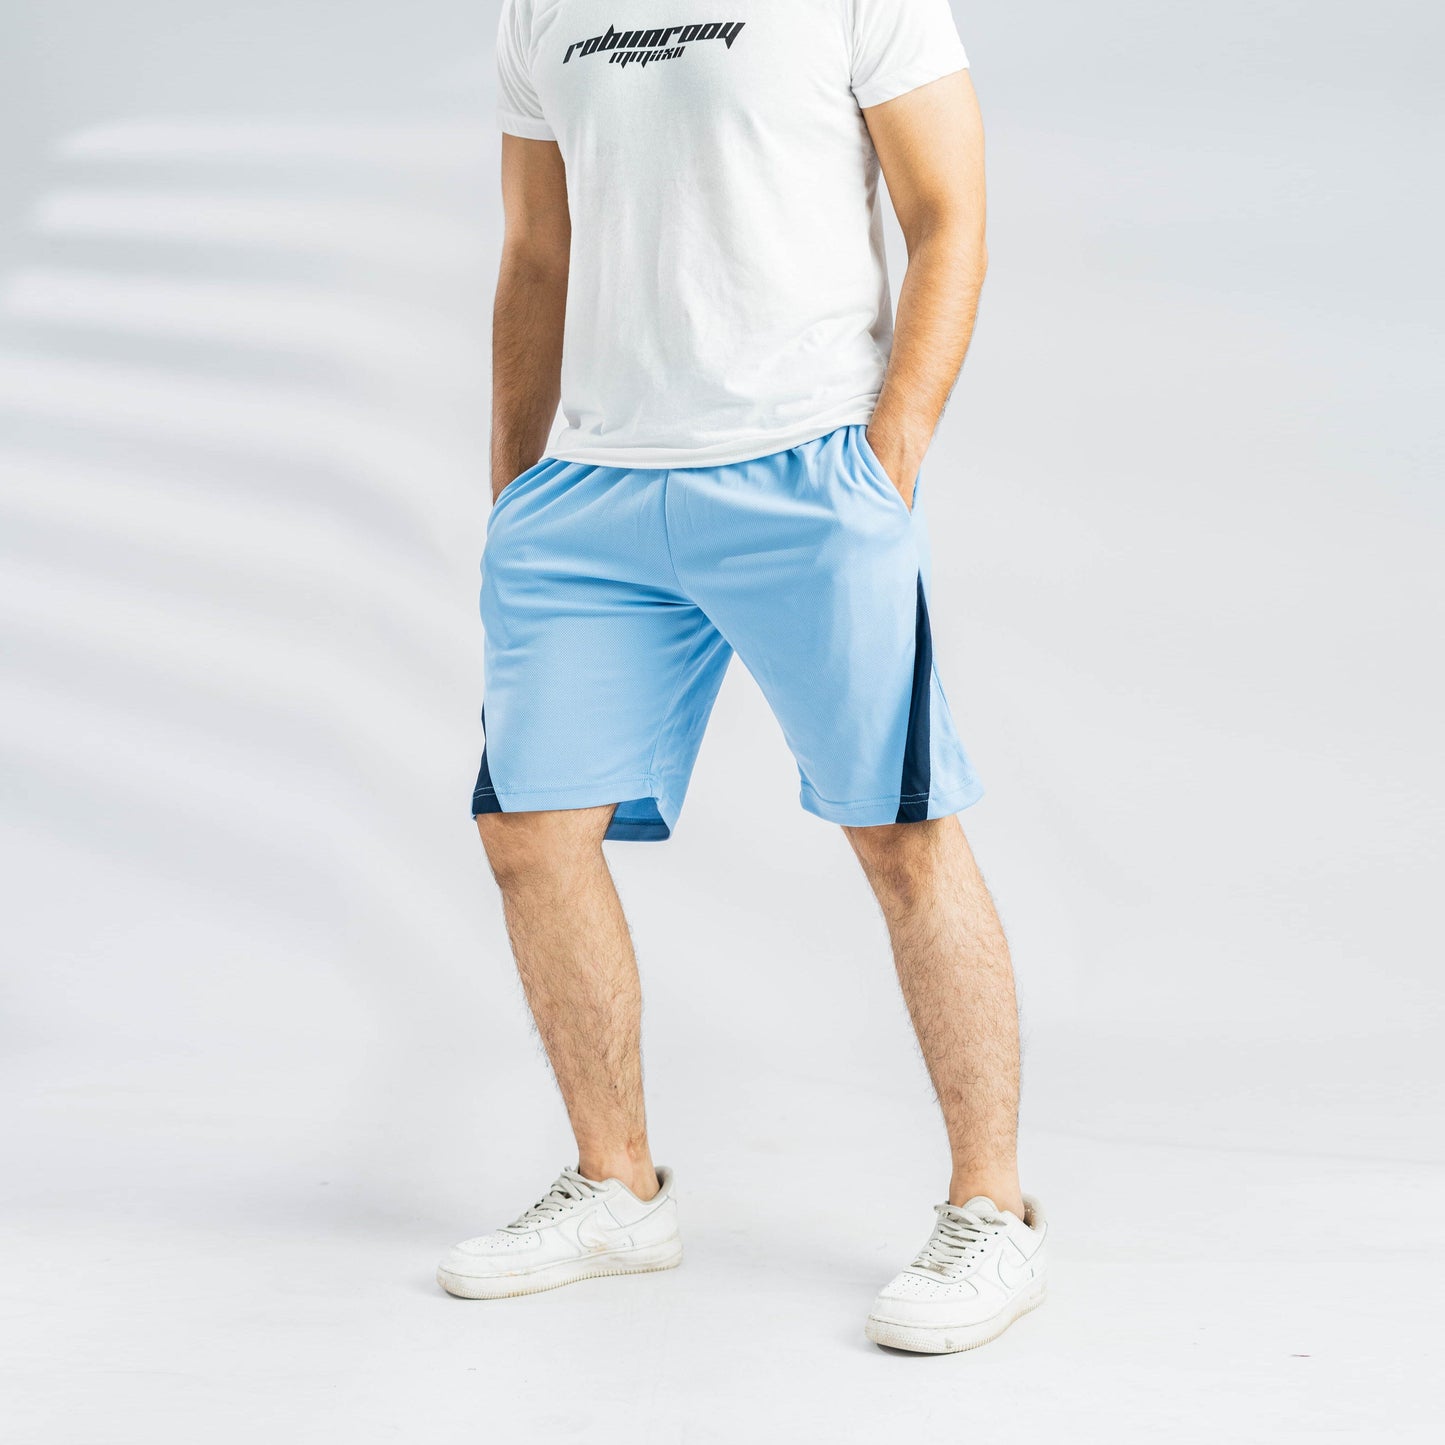 Polo Athletica Men's Activewear Shorts Men's Shorts Polo Republica Sky & Navy S 